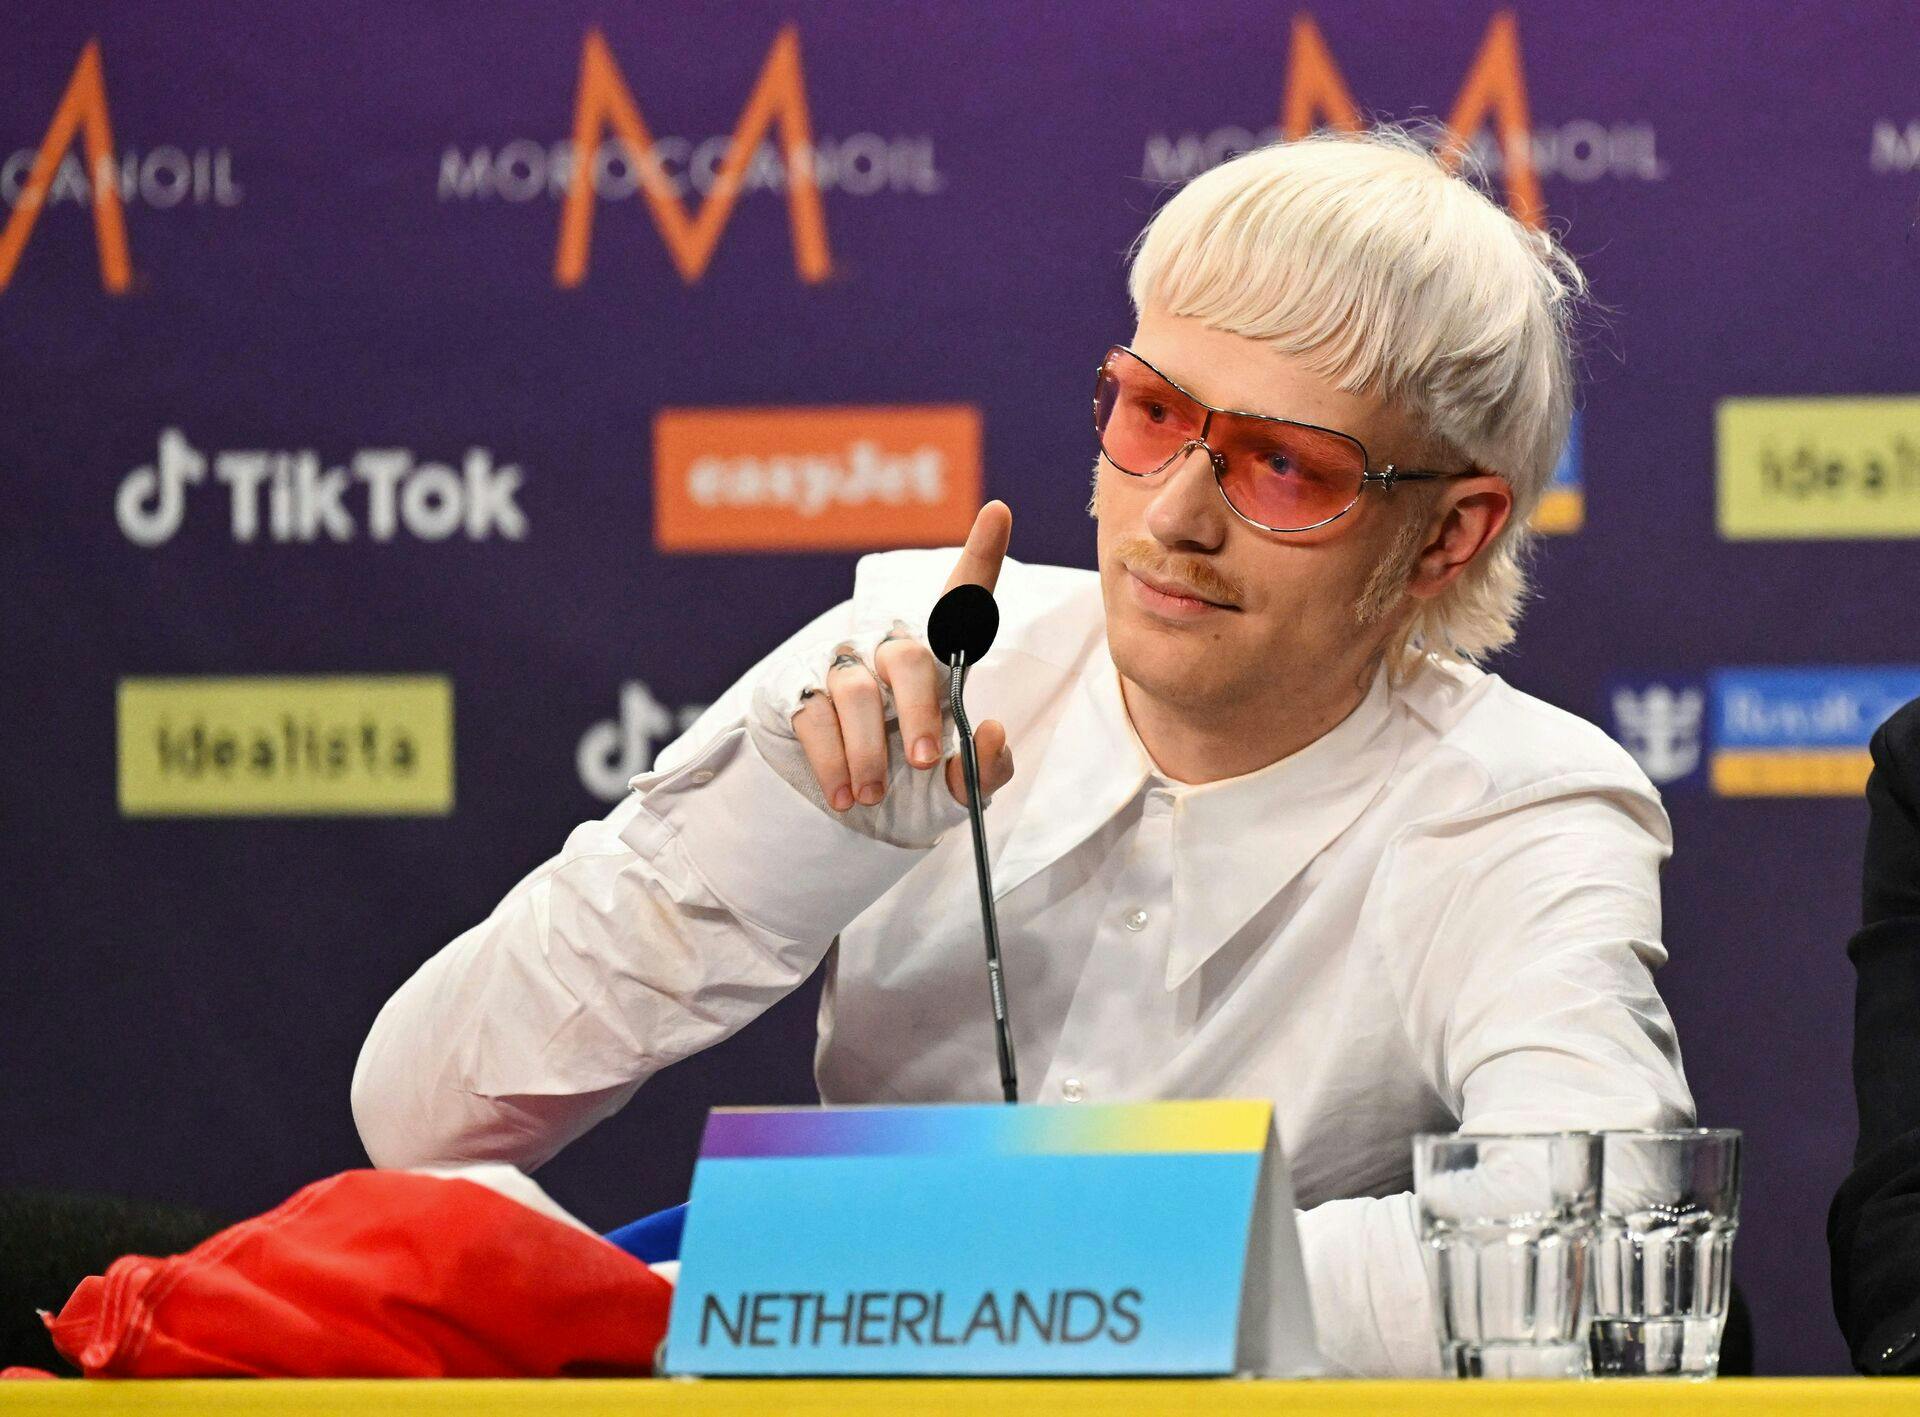 Joost Klein blev diskvalificeret fra Eurovision, efter han angiveligt har opført sig truende overfor en kvinde på produktionsholdet. 